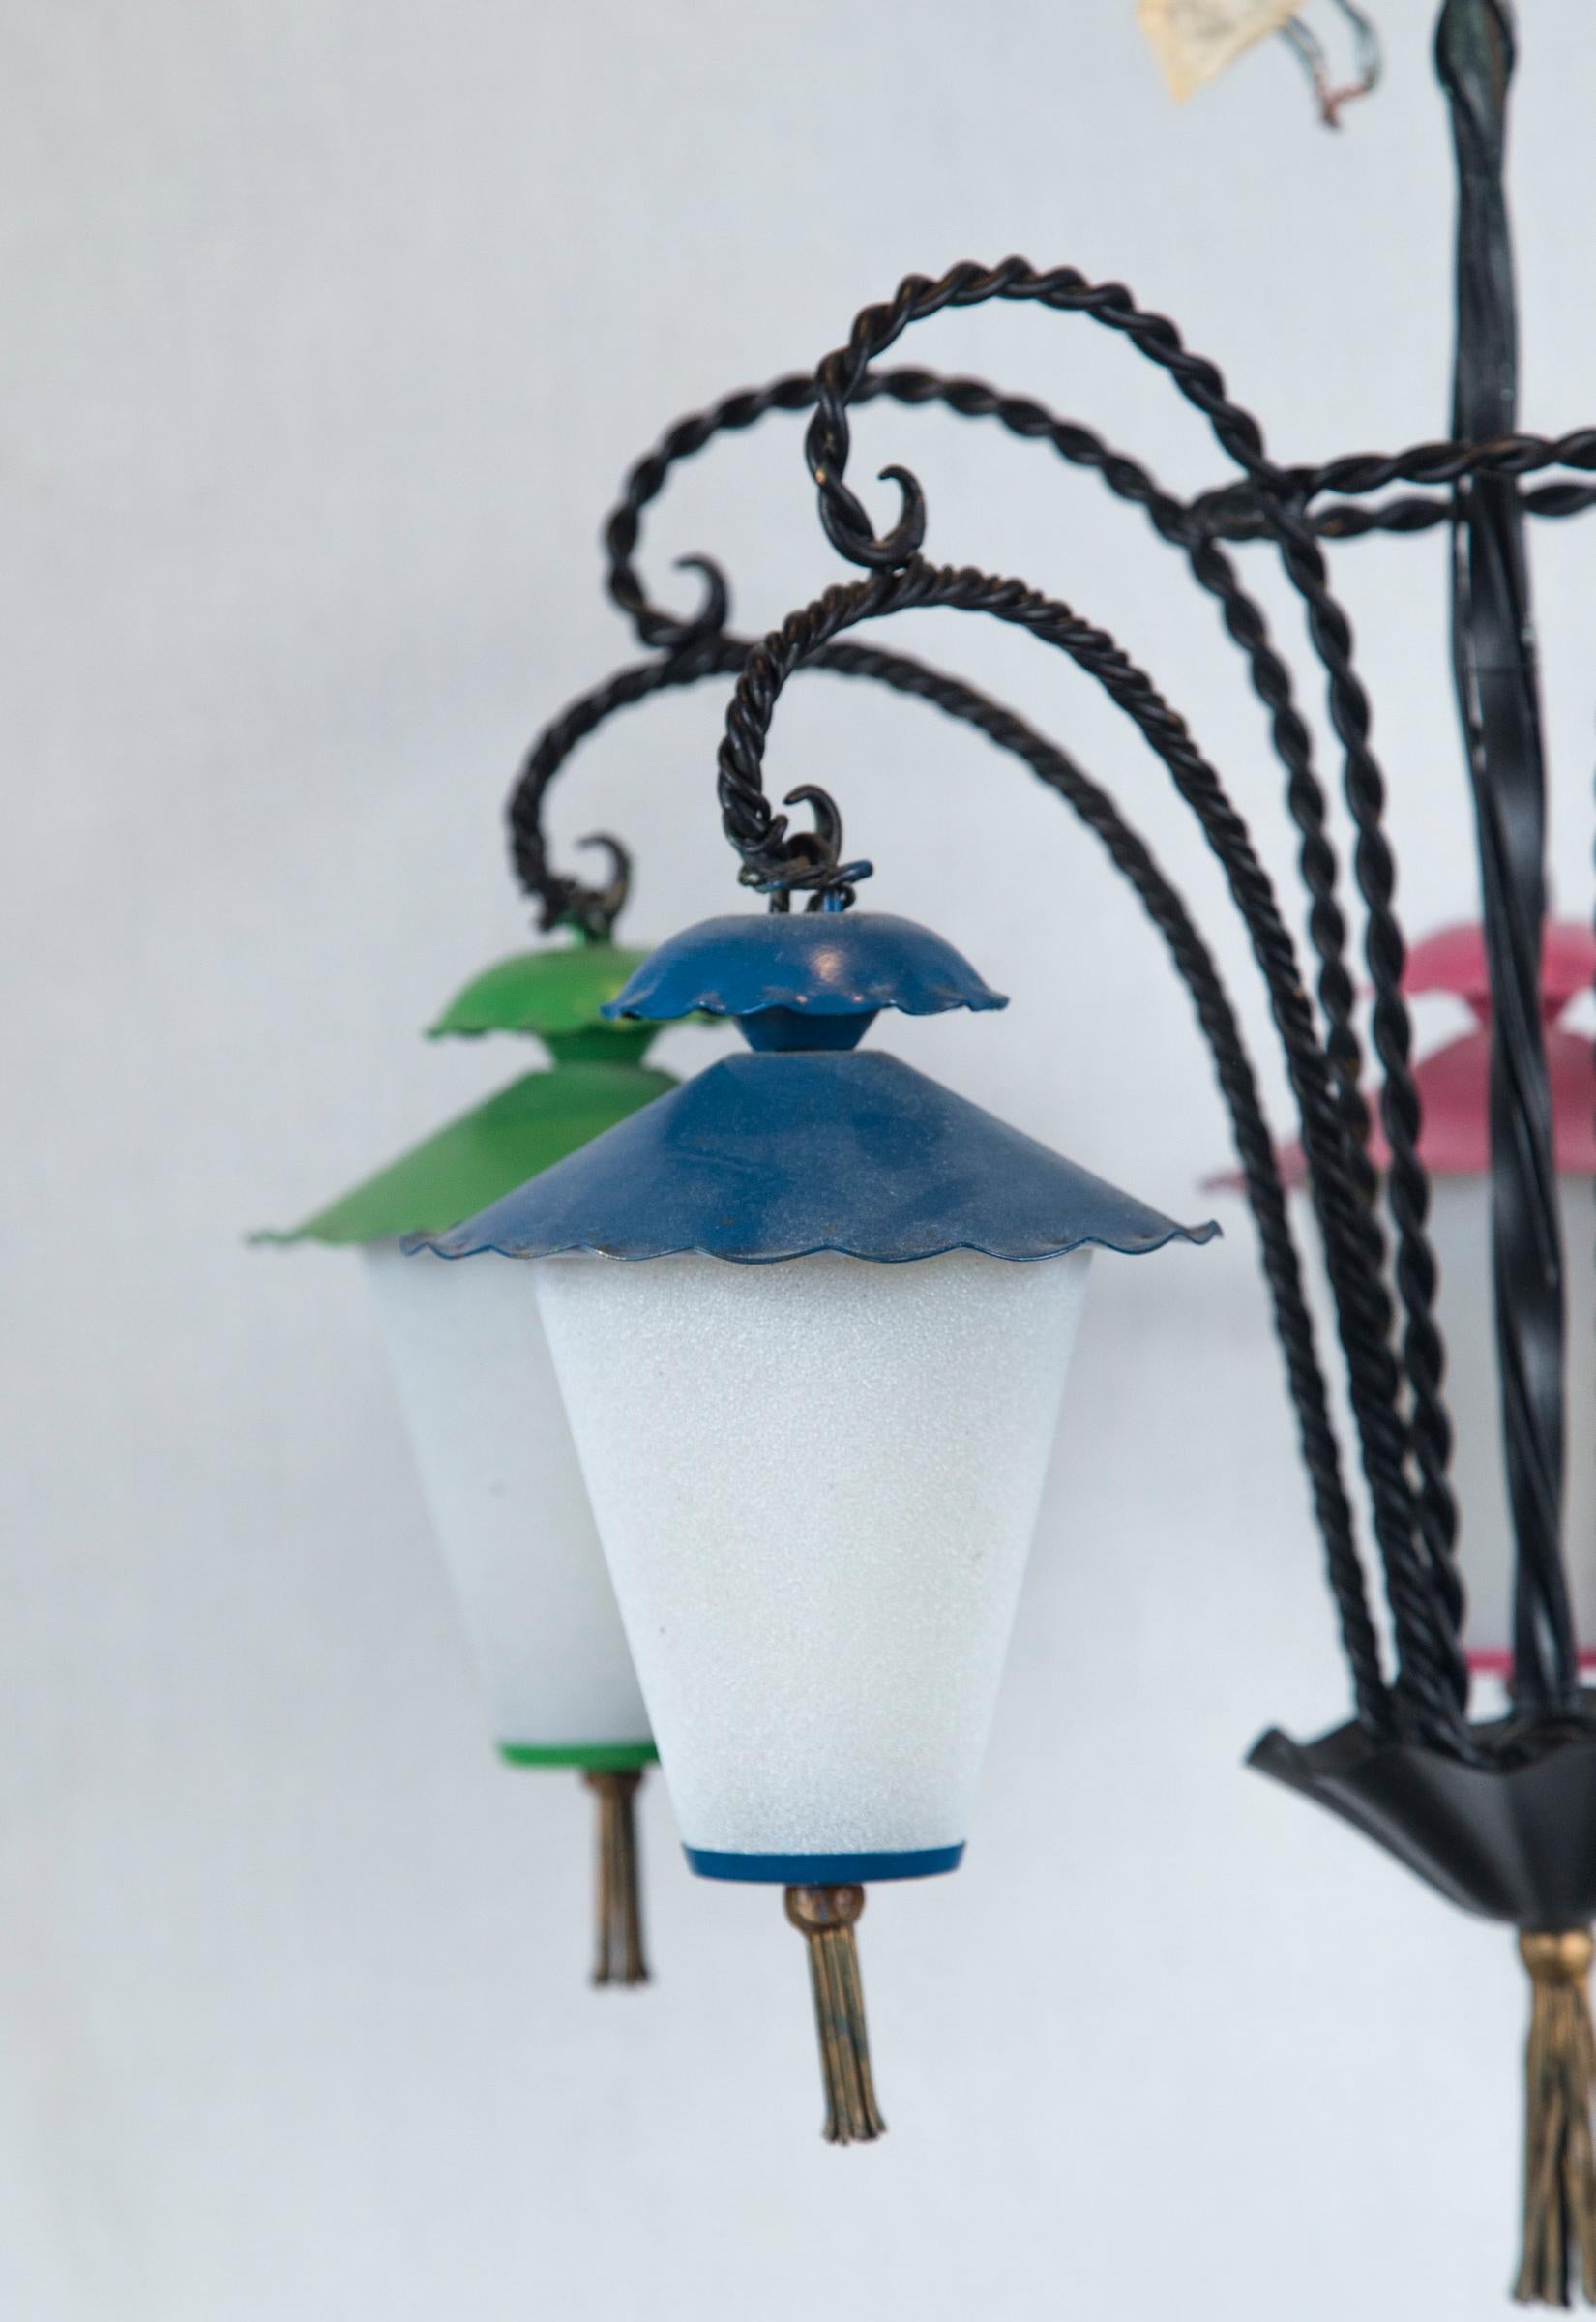 Lustre en fer forgé avec cinq lanternes suspendues de style japonais. Les lanternes sont en verre au lait, avec un sommet en métal et un fond en métal agrémenté de glands en laiton. Chaque lanterne est peinte d'une couleur différente.